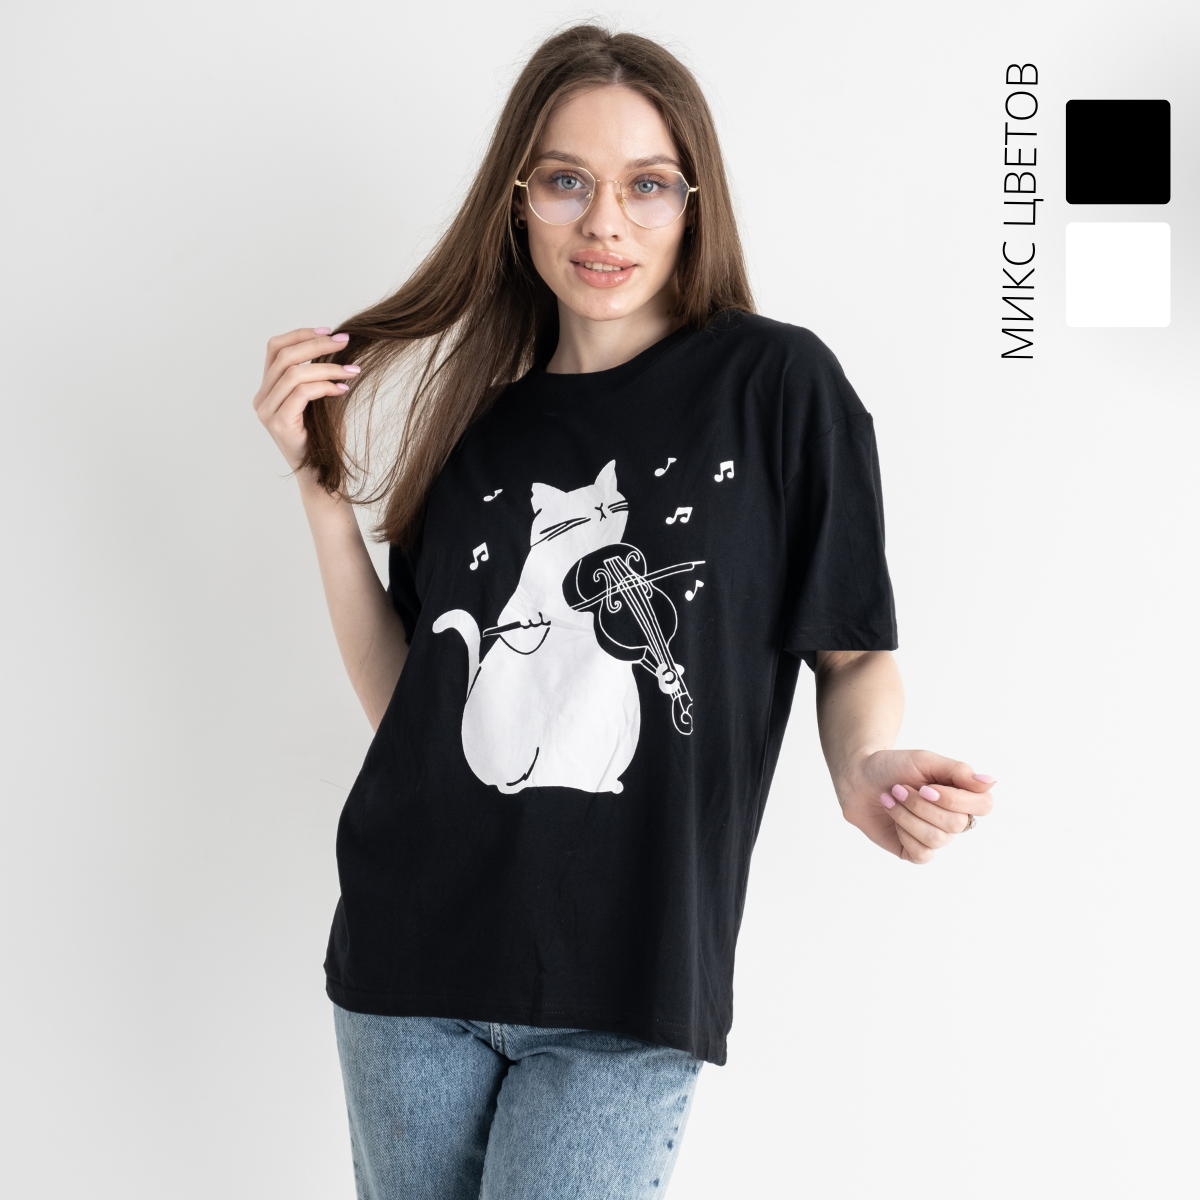 1657 МИКС 2-Х ЦВЕТОВ футболка женская с принтом (2 ед. размеры: универсал 42-46)